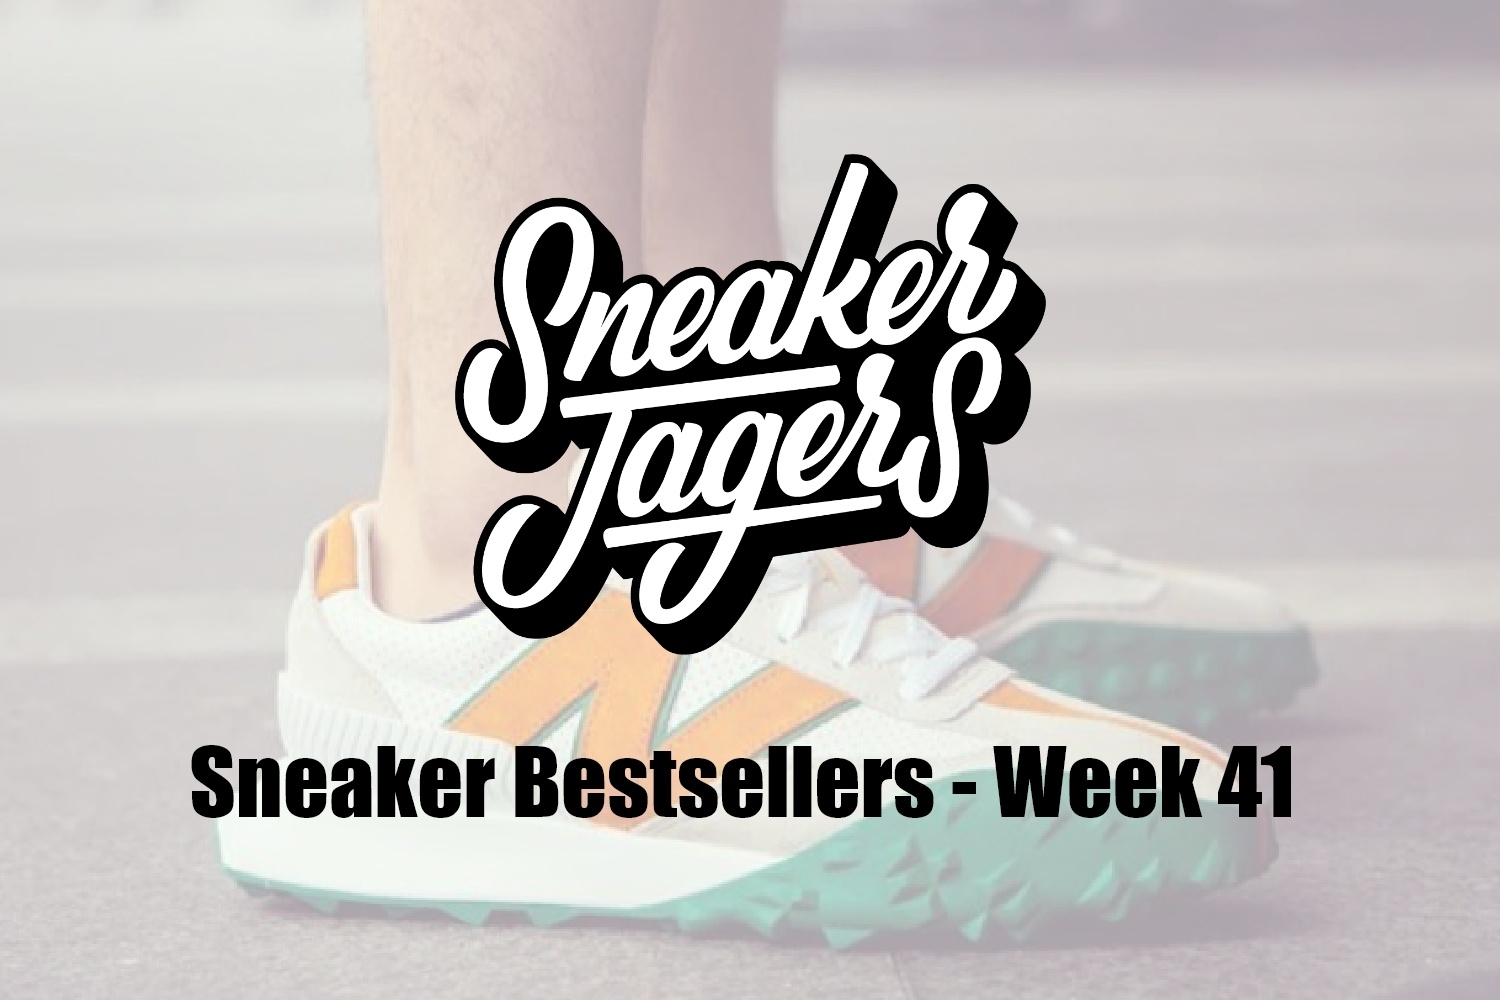 Our Sneaker Bestsellers - Week 41 - What's on Trend 📈